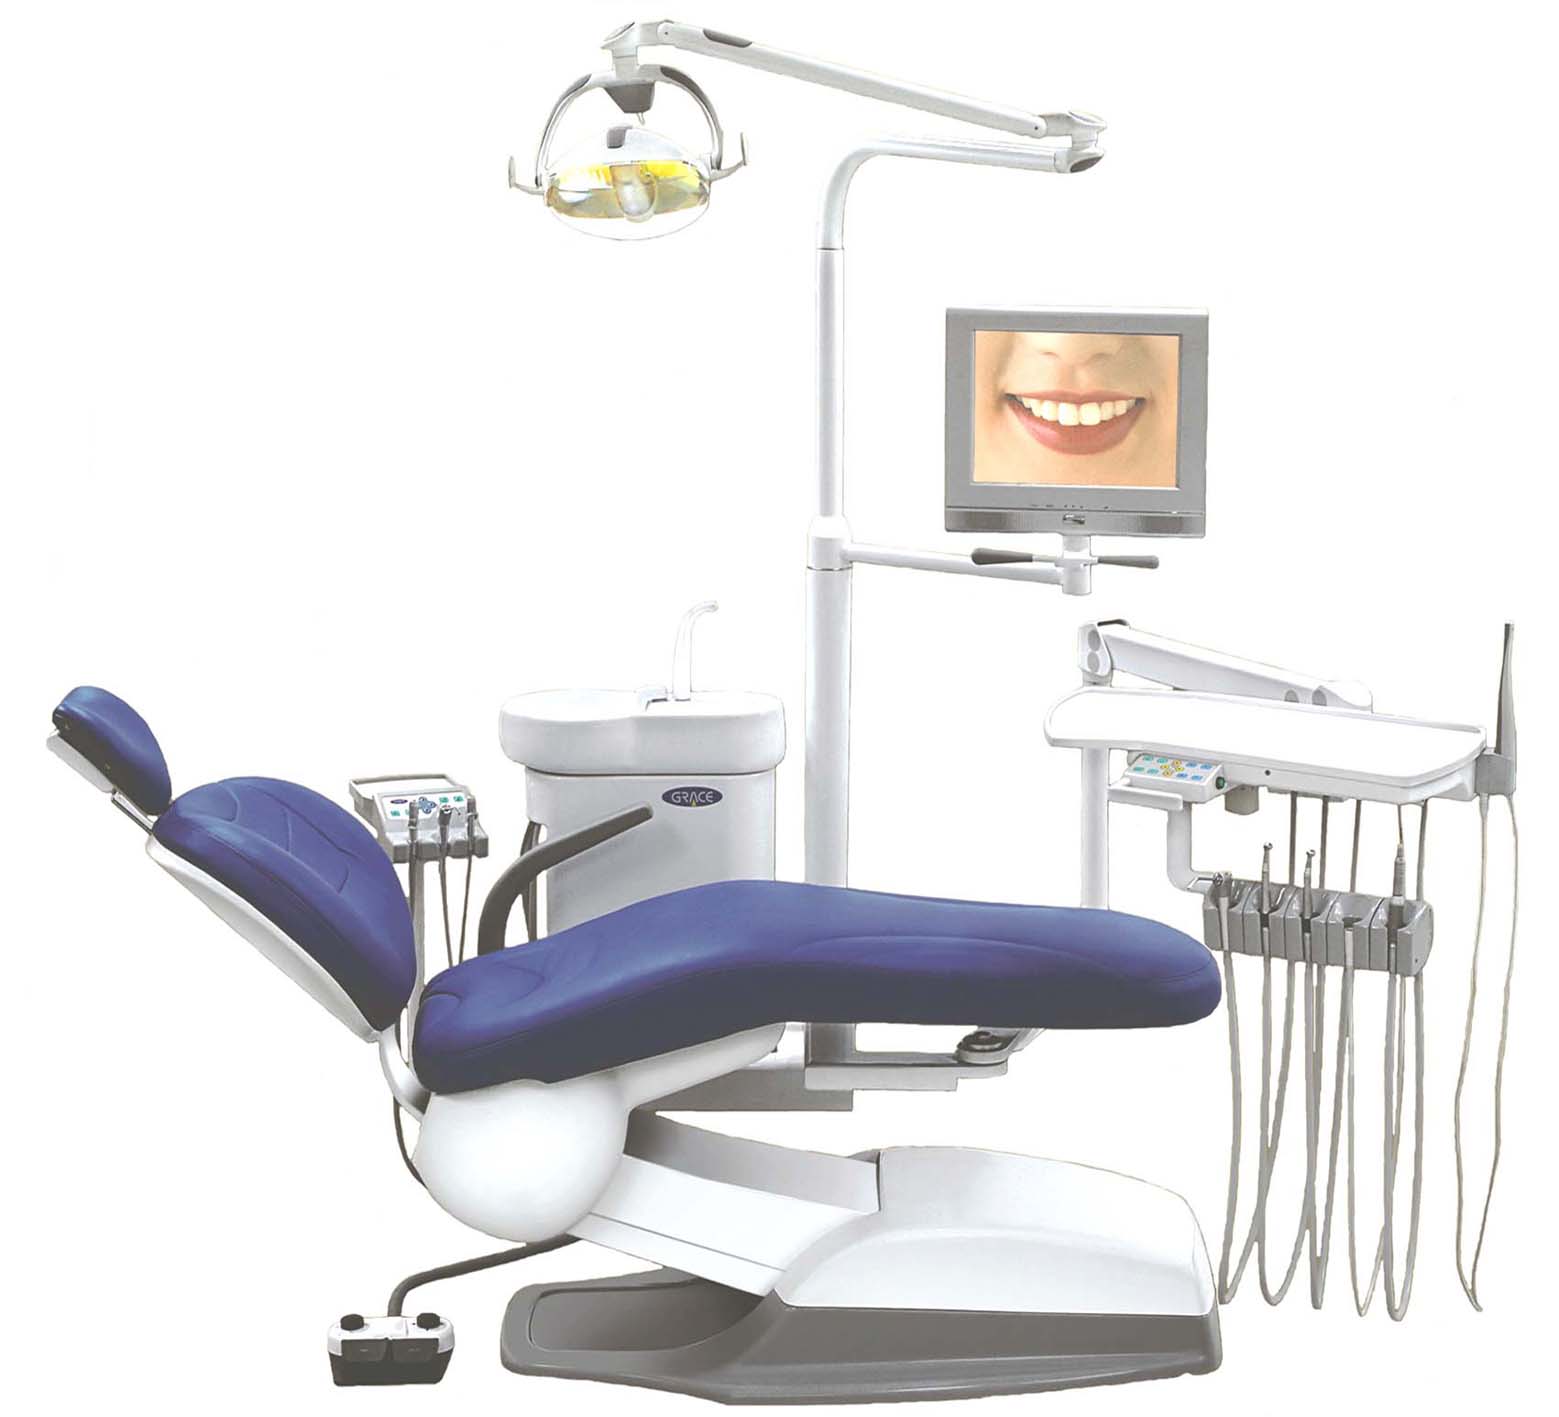  Chair-Mounted Dental Unit (Кресло-конная Стоматологическая установка)